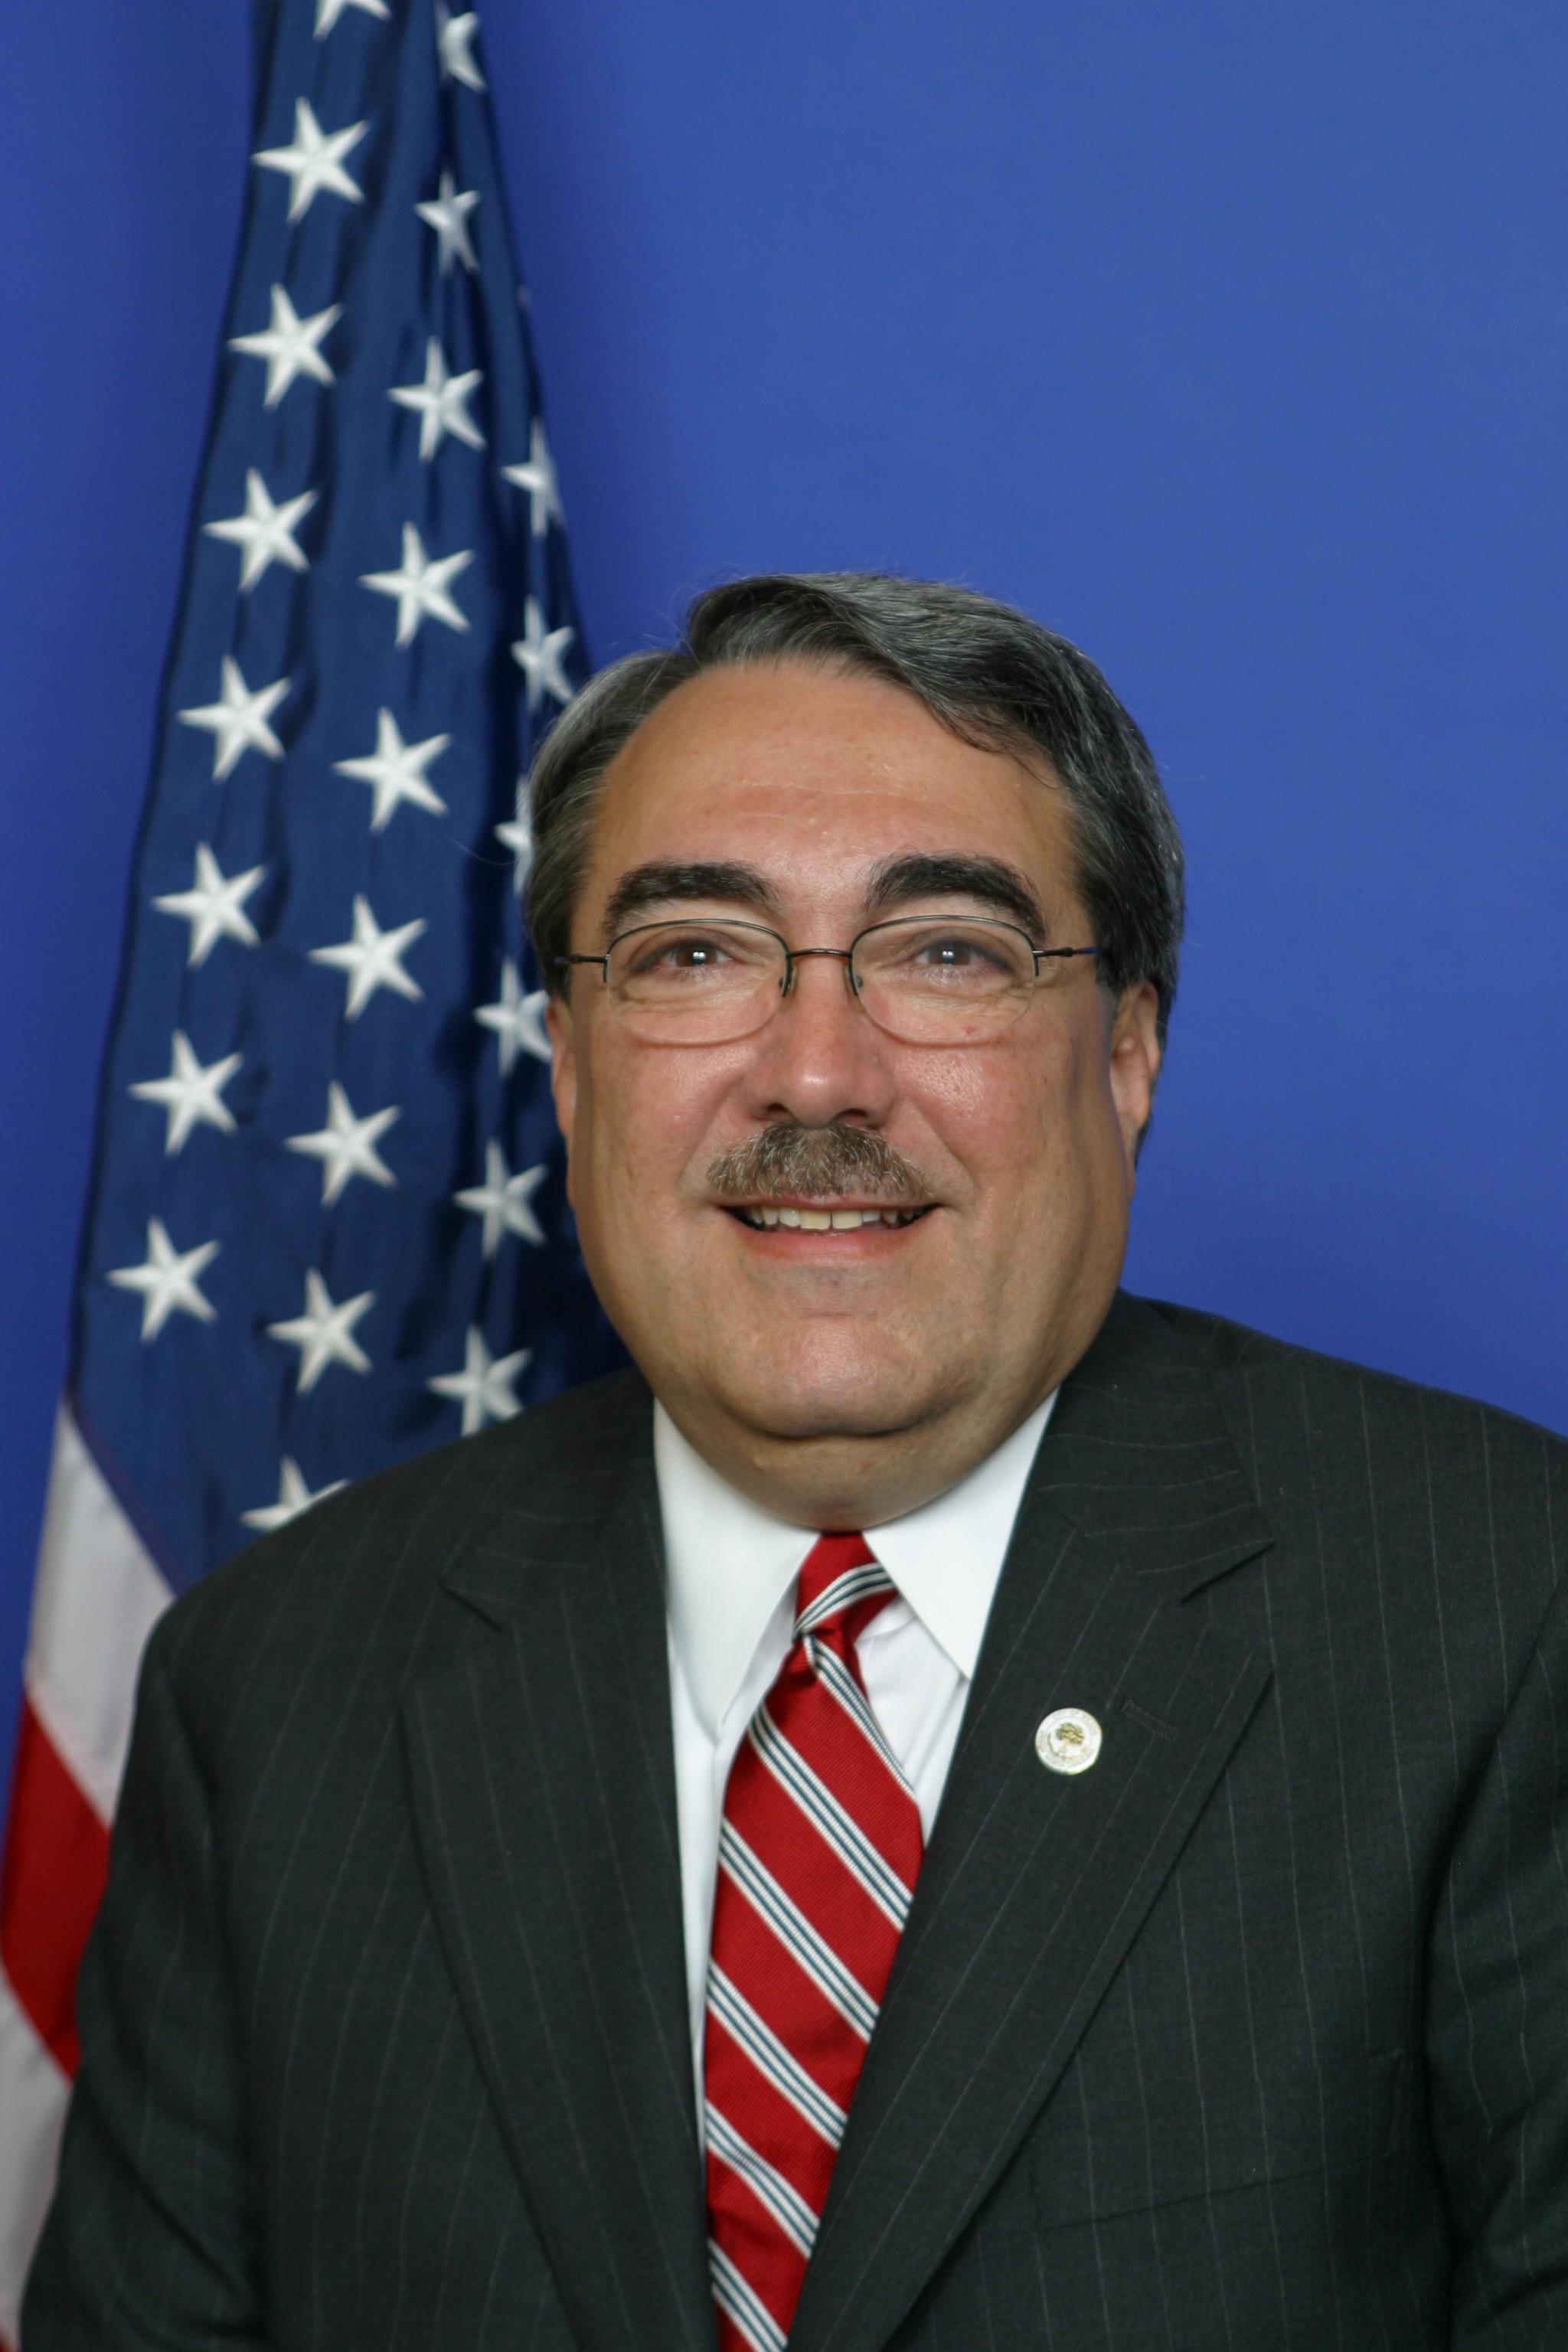 Official Photo of Congressman G. K. Butterfield